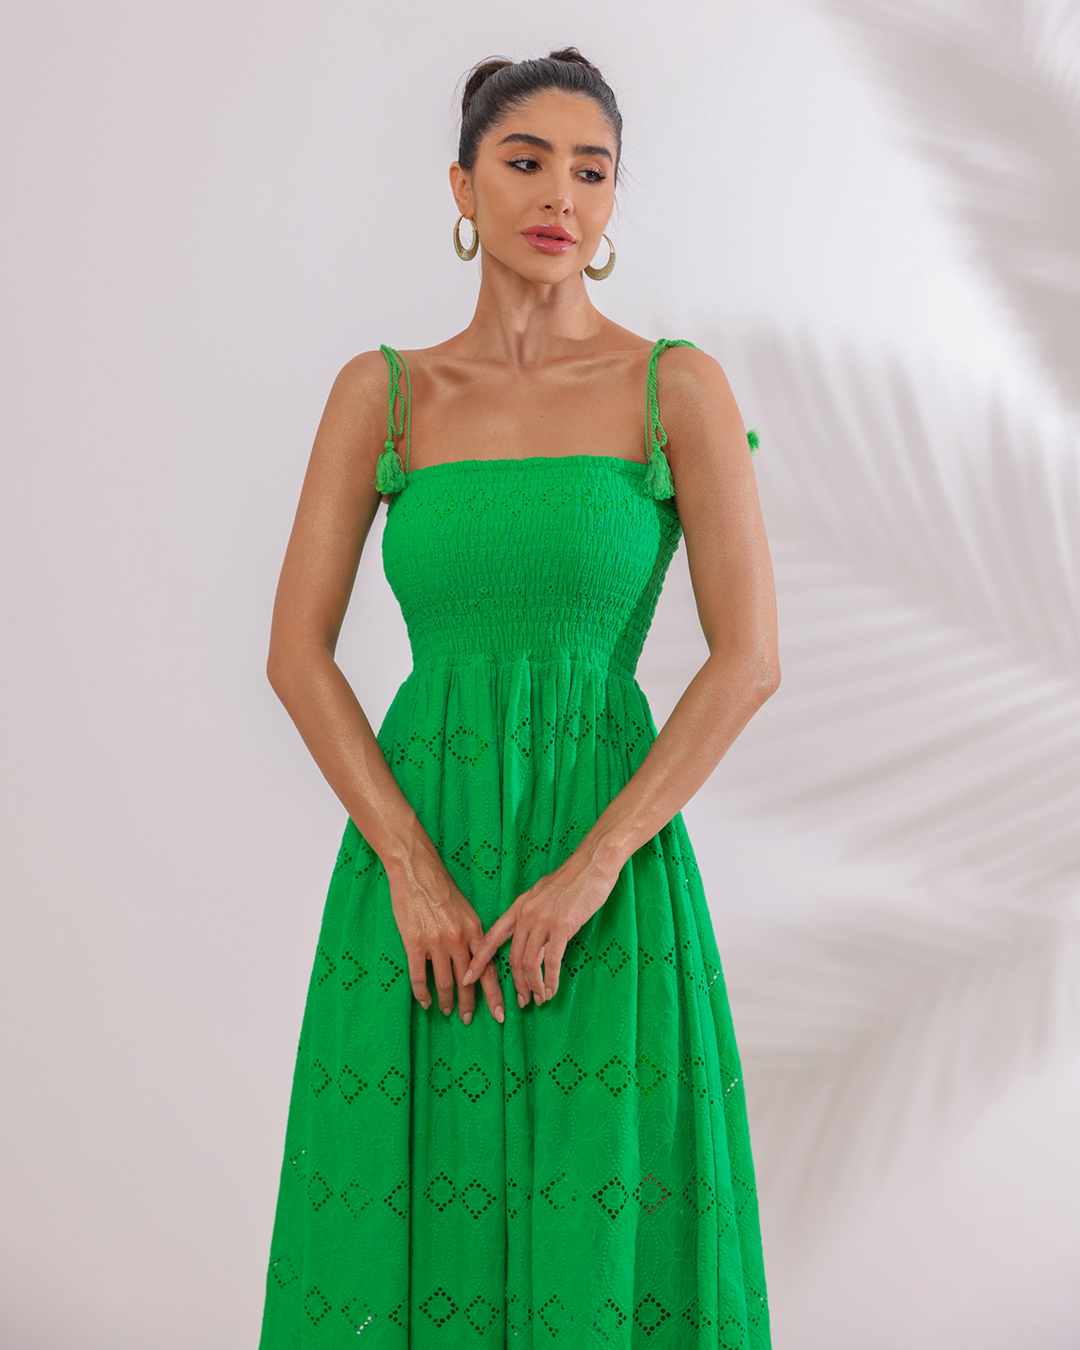 Dot Clothing - Vestido Dot Clothing Longuete Verde - 2125VERDE